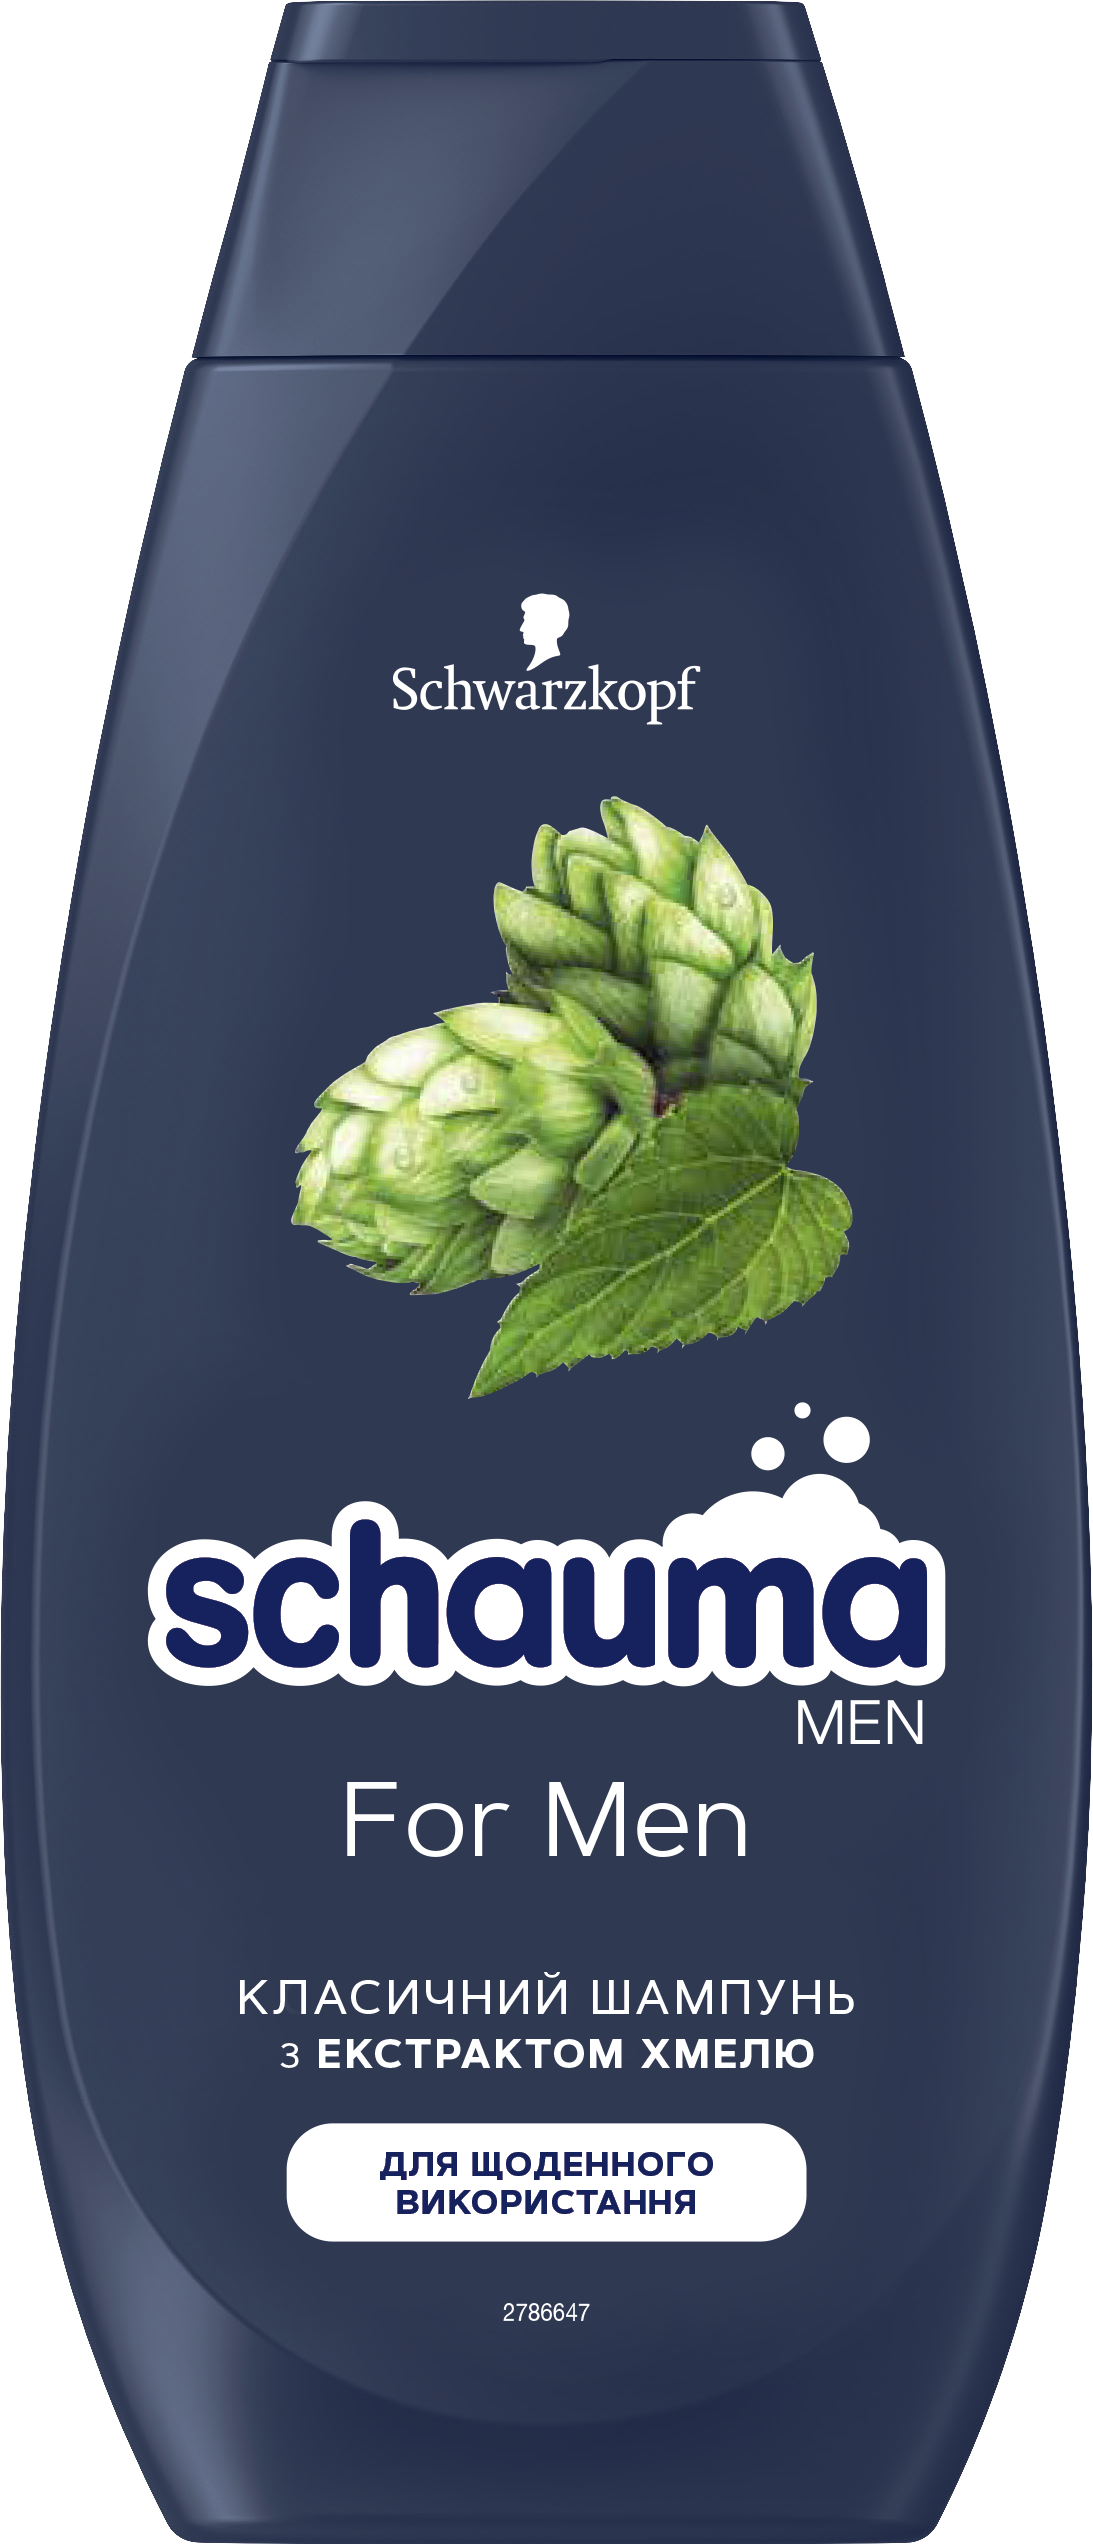 Подарочный набор для мужчин Fa&Schauma For Men,Шампунь 250 мл + Антиперспирант 50 мл - фото 5